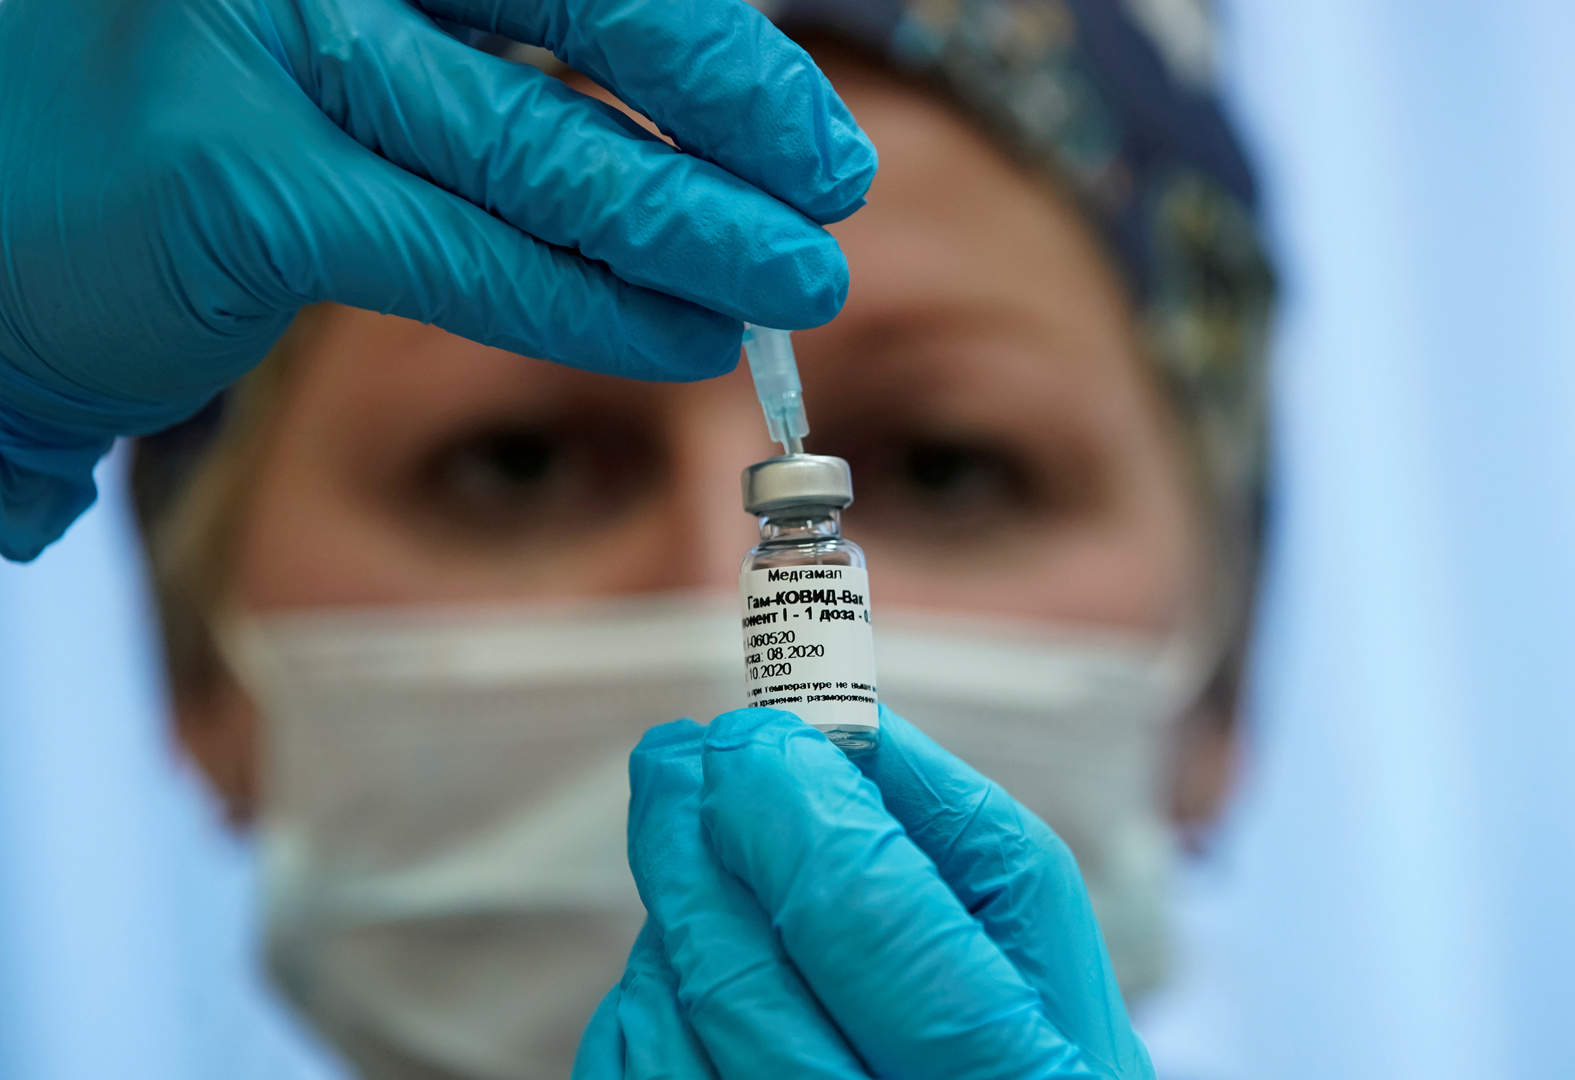 روسيا تحتل المرتبة الـ 105 عالميا في عدد الوفيات جراء فيروس كورونا